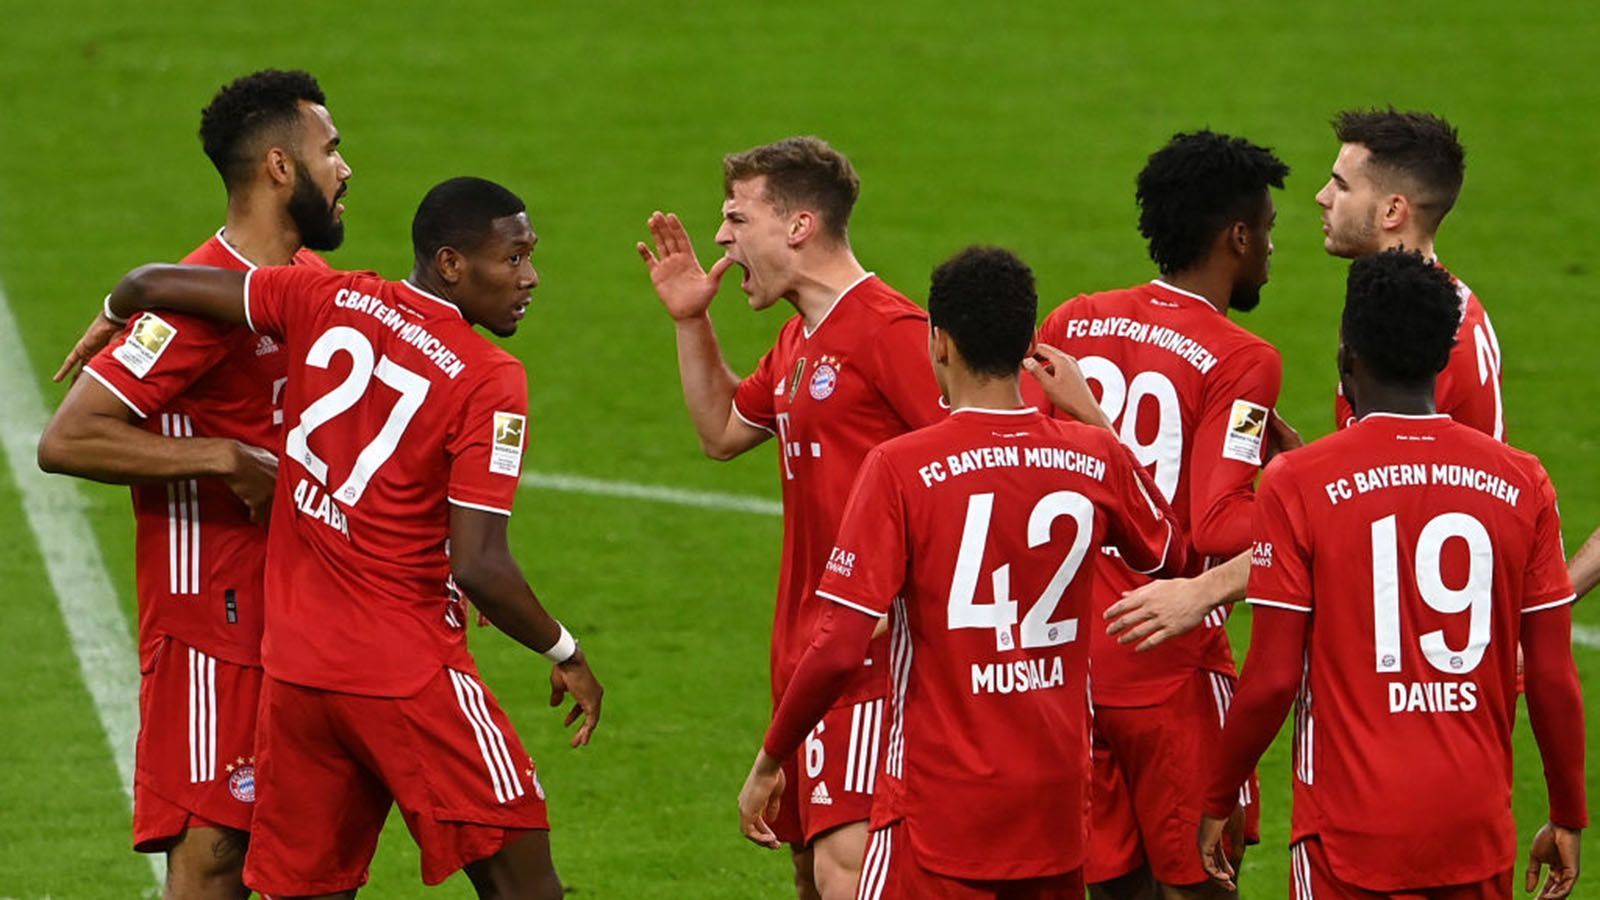 
                <strong>Die Bayern-Stars gegen Leverkusen in der Einzelkritik</strong><br>
                Zwei frühe Treffer bescheren dem FC Bayern einen 2:0-Heimsieg gegen Leverkusen - und bringen dem Rekordmeister kommende Woche einen Meisterschaftsmatchball. Vor allem die linke Seite der Münchner glänzt in der Allianz Arena. Die Bayern-Stars in der Einzelkritik.
              